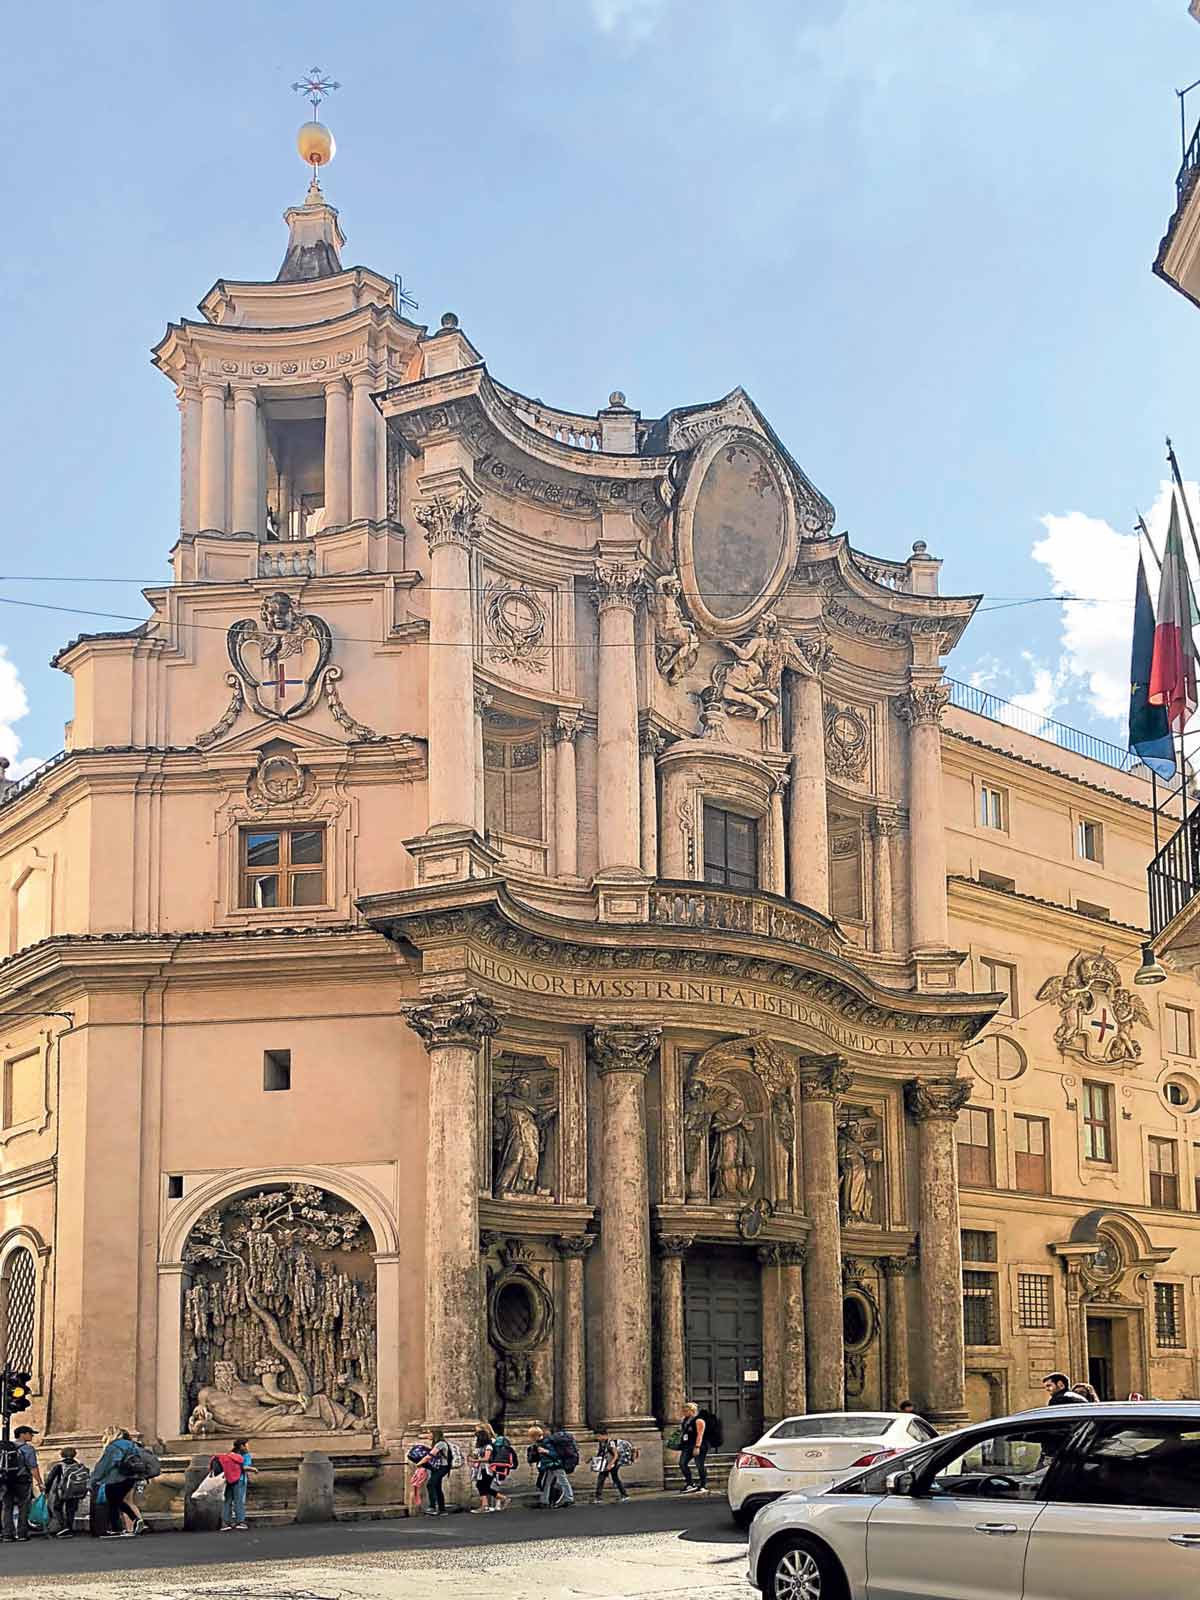 Baroque Architecture - San Carlo alle Quattro Fontane in Rome